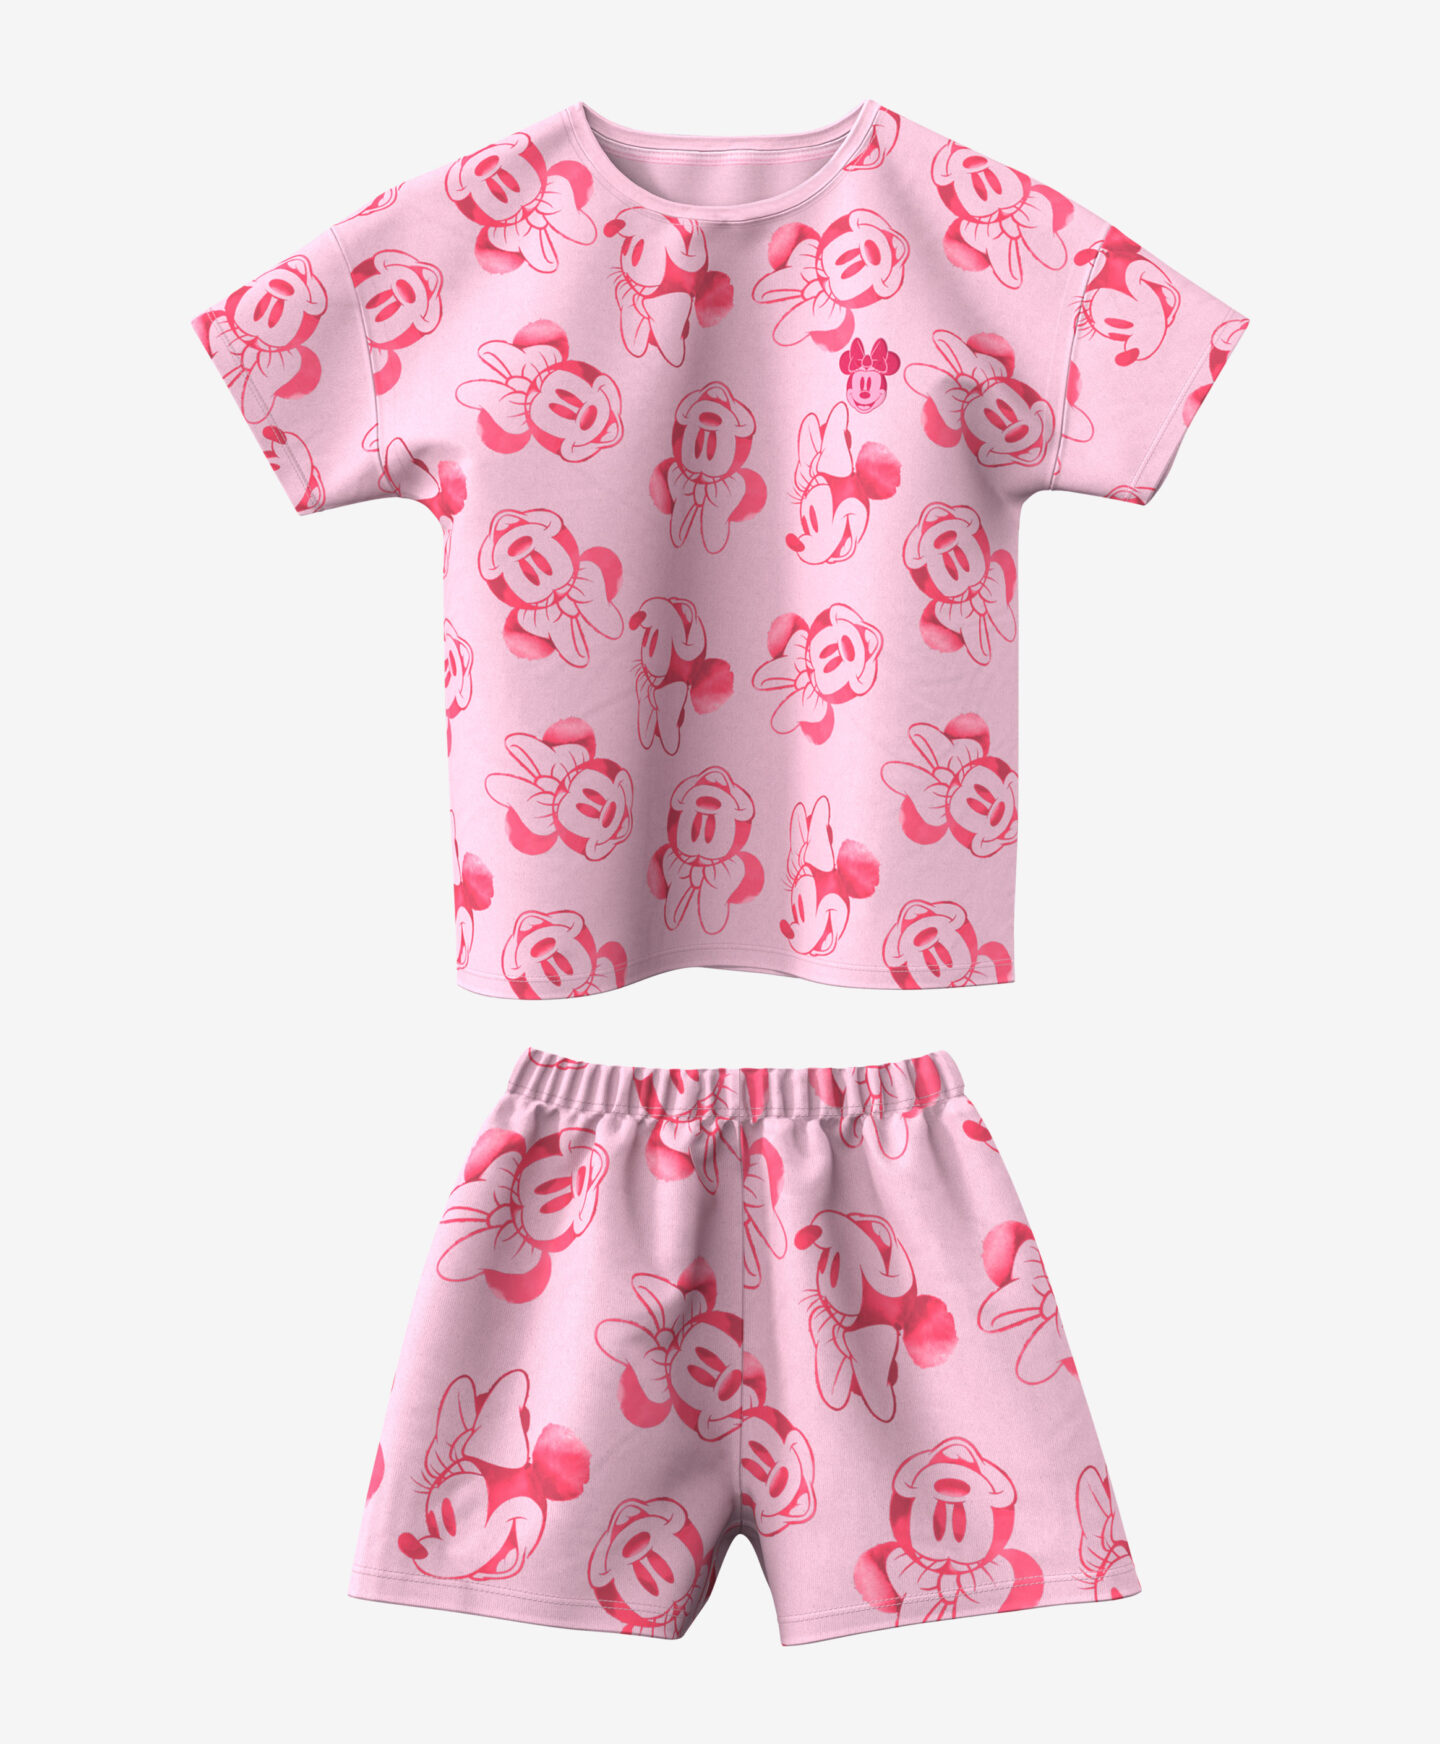 pigiama rosa da bambina disney